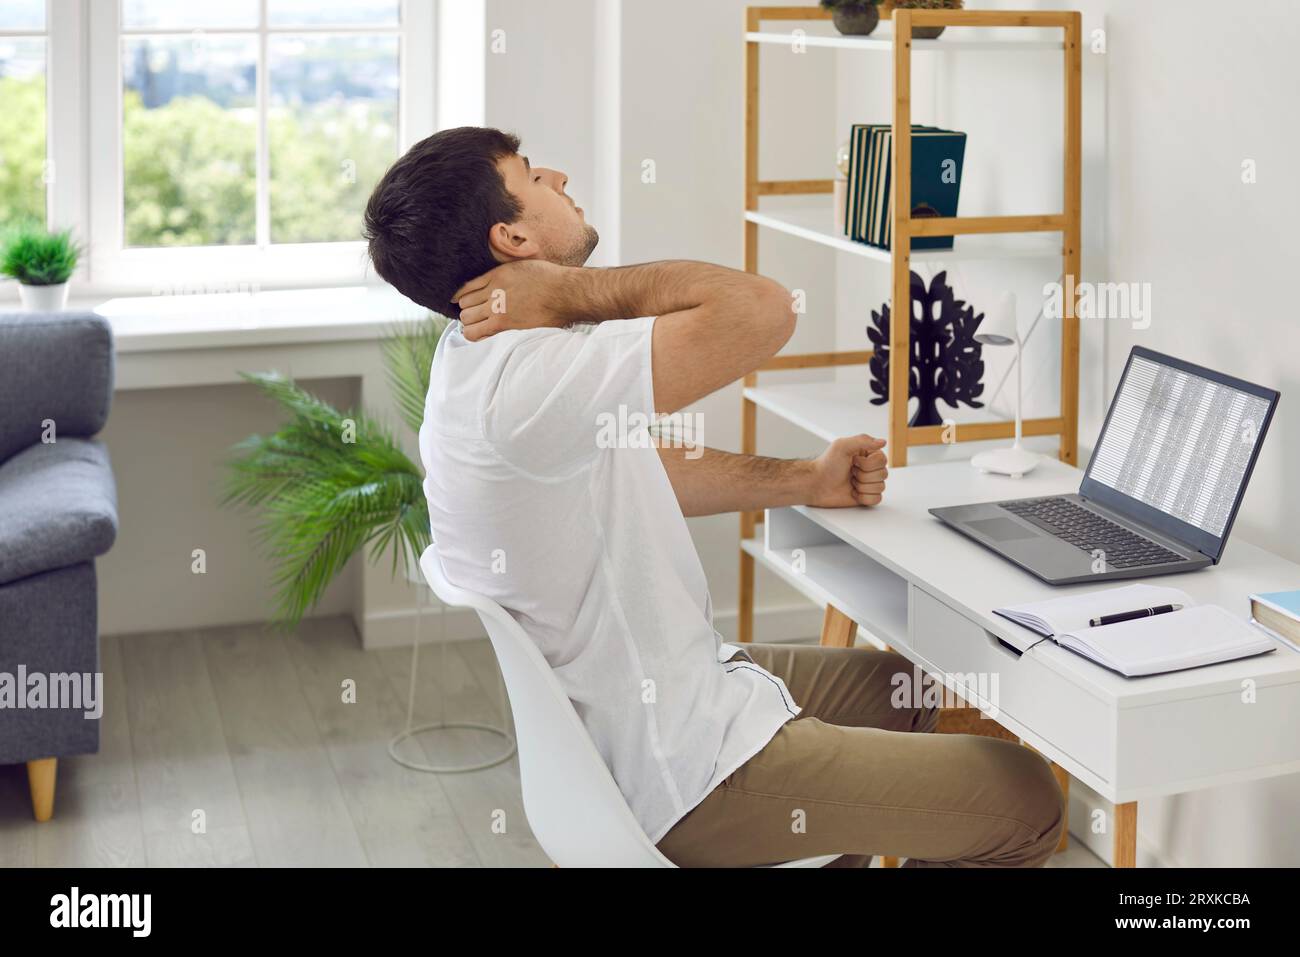 Ein junger Geschäftsmann, der erschöpft aussieht, massiert seinen Hals, während er am Arbeitsplatz sitzt. Stockfoto